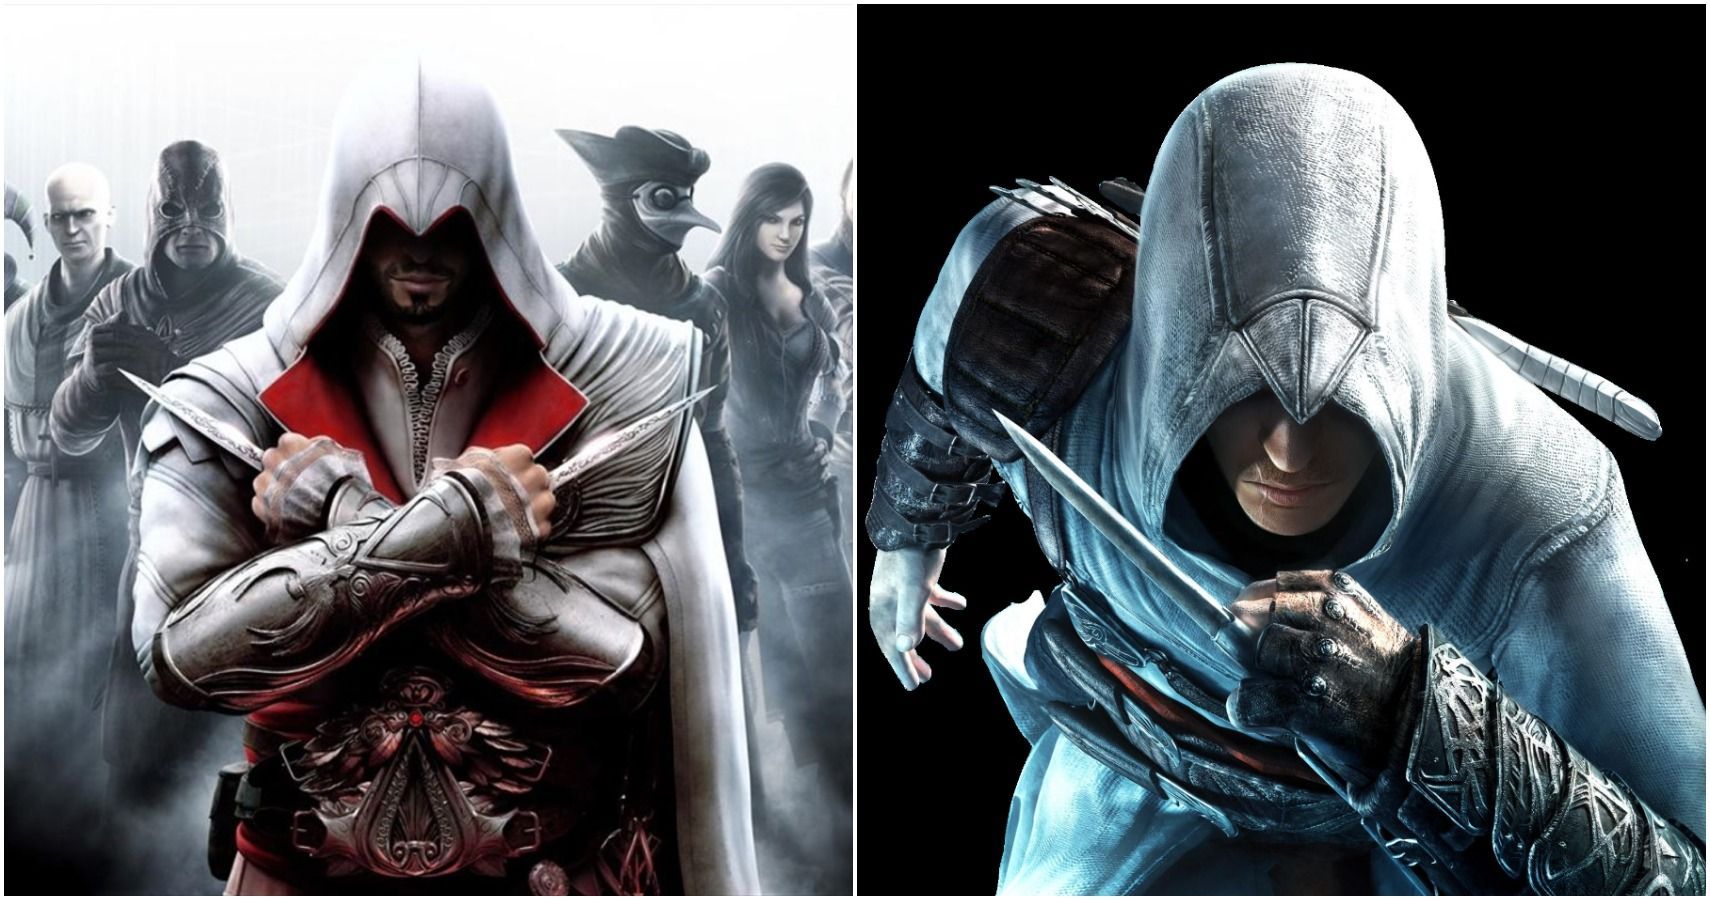 Assassins Creed Ezio and Altair